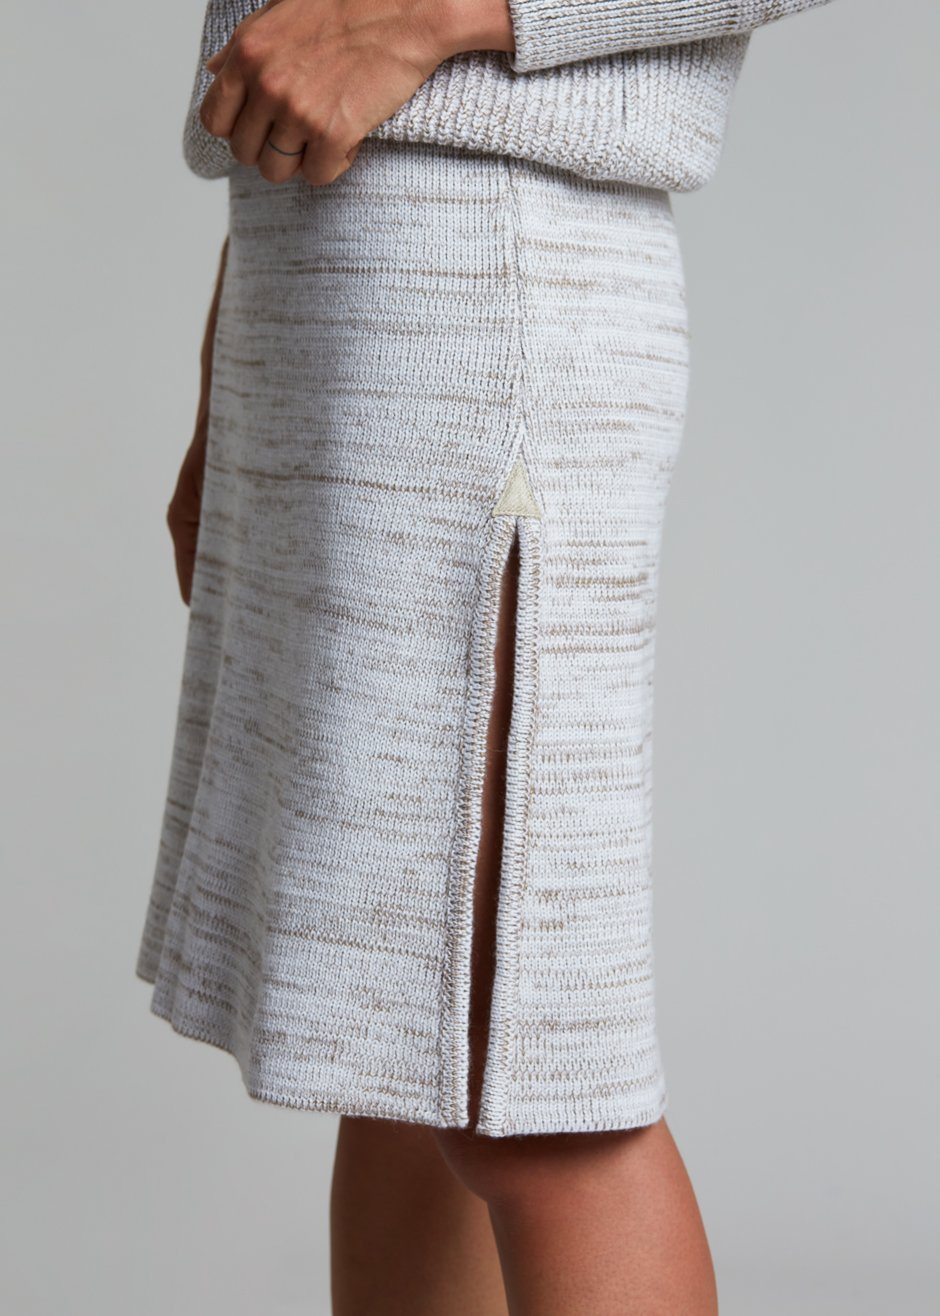 Bevza Knitted Skirt - Light Beige Melange - 5